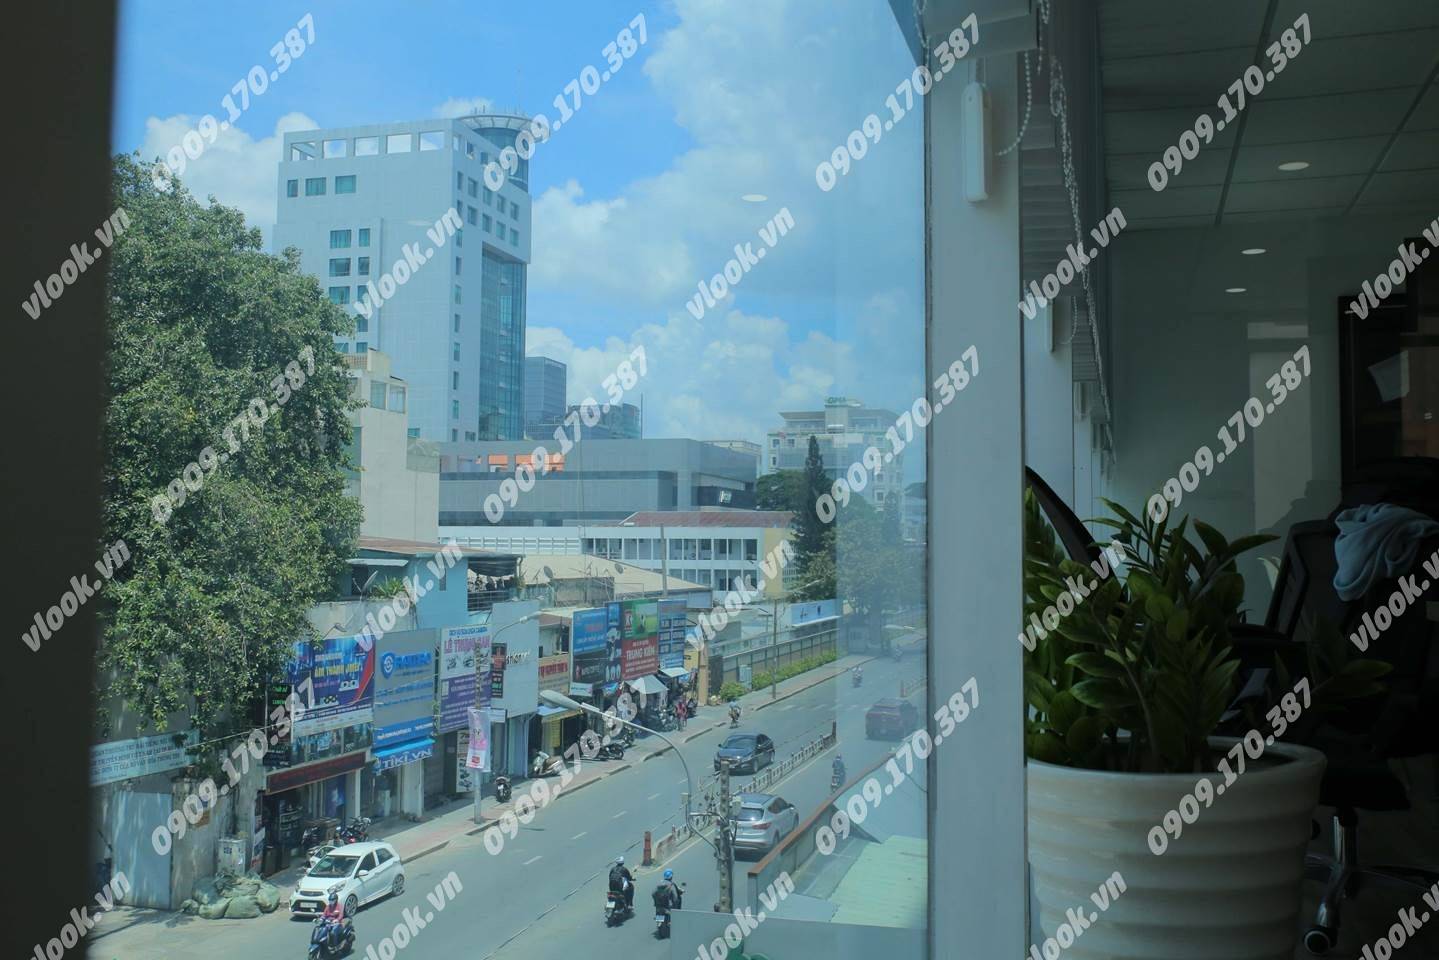 Cao ốc cho thuê văn phòng An Viên Building, Nguyễn Thị Minh Khai, Quận 1, TPHCM - vlook.vn